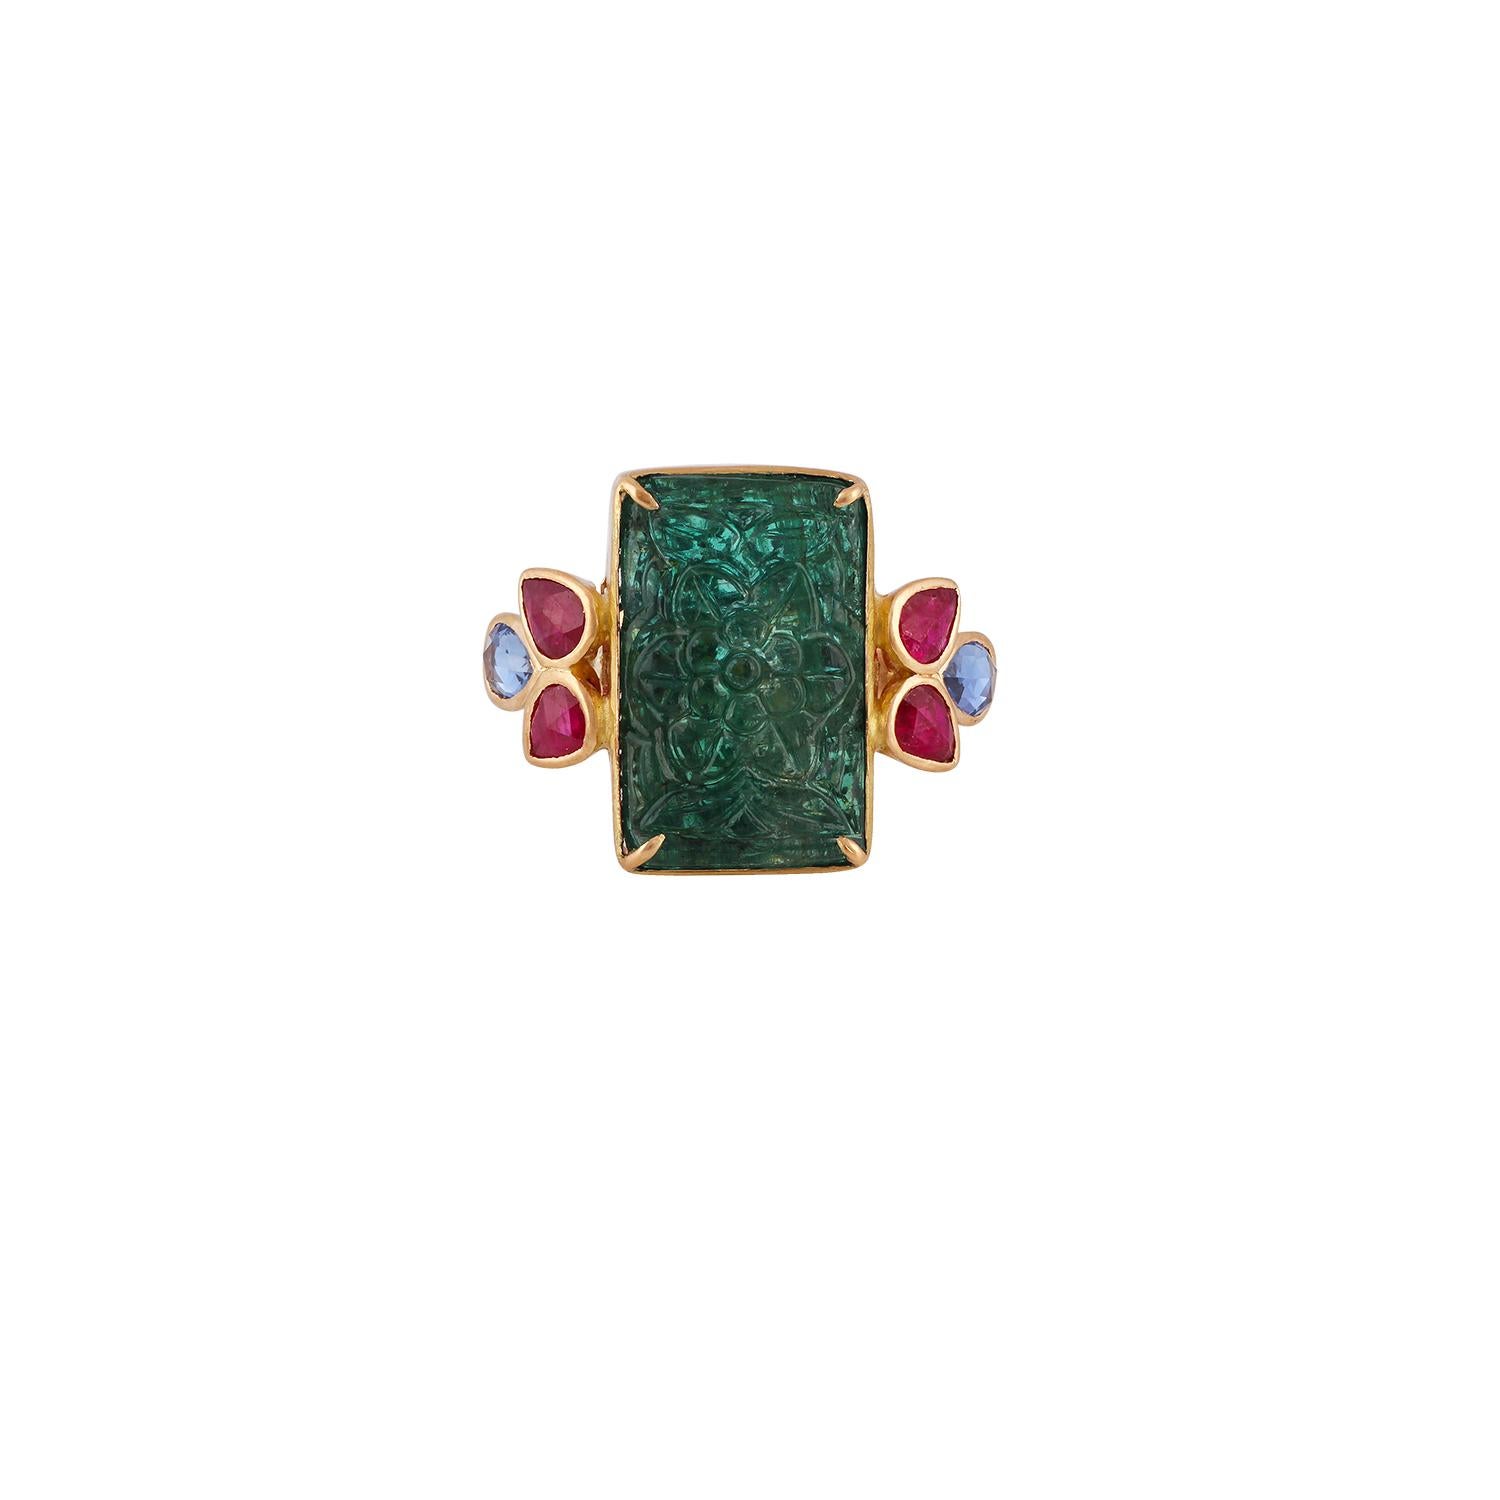 Dies ist eine elegante Carved sambischen Smaragd, Saphir & Rubin Ring mit 1 Stück Carved sambischen Smaragd Gewicht 9,41 Karat, die von Saphir umgeben ist  Gewicht 0,71 Karat & Rubin  Gewicht 0,92 Karat  dieser gesamte Ring ist mit 18k Gelbgold